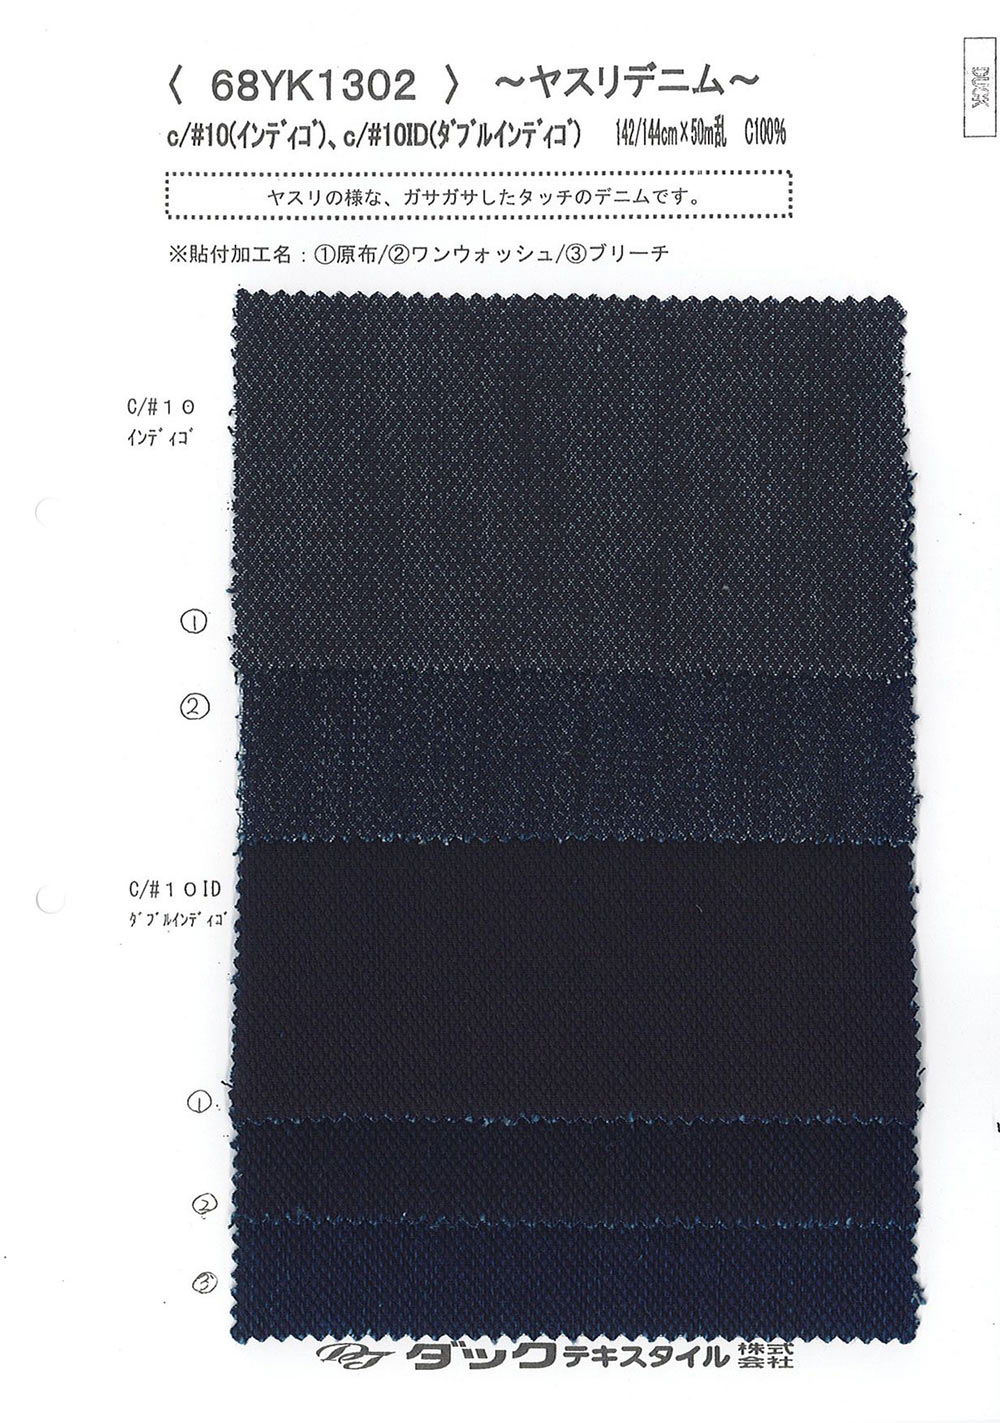 68YK1302 Dossier Denim[Fabrication De Textile] DUCK TEXTILE